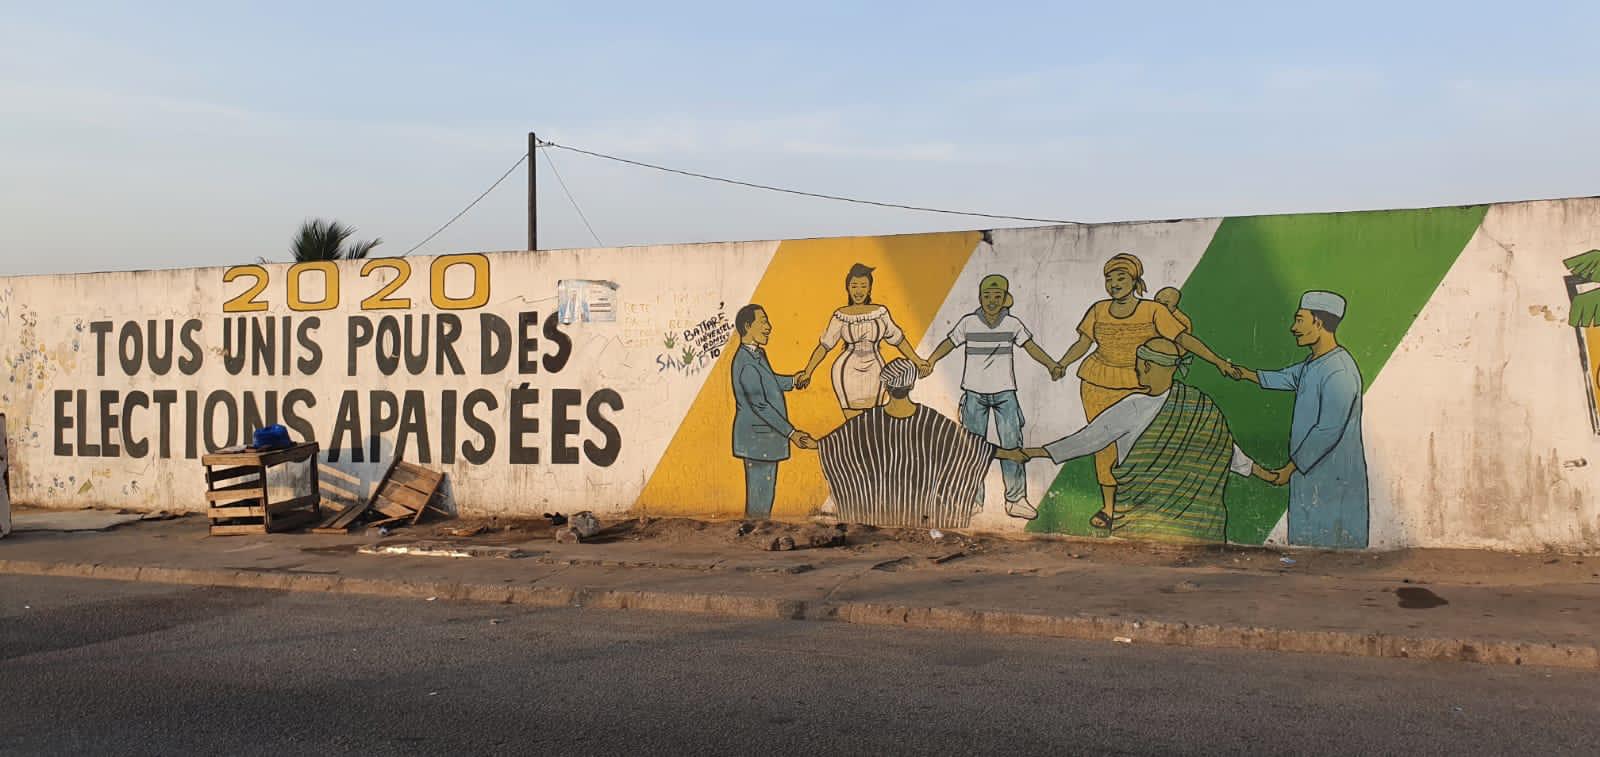 Projet de prévention de la violence politique et renforcement de la cohésion sociale par le dialogue et la collaboration citoyenne en Cote d'Ivoire